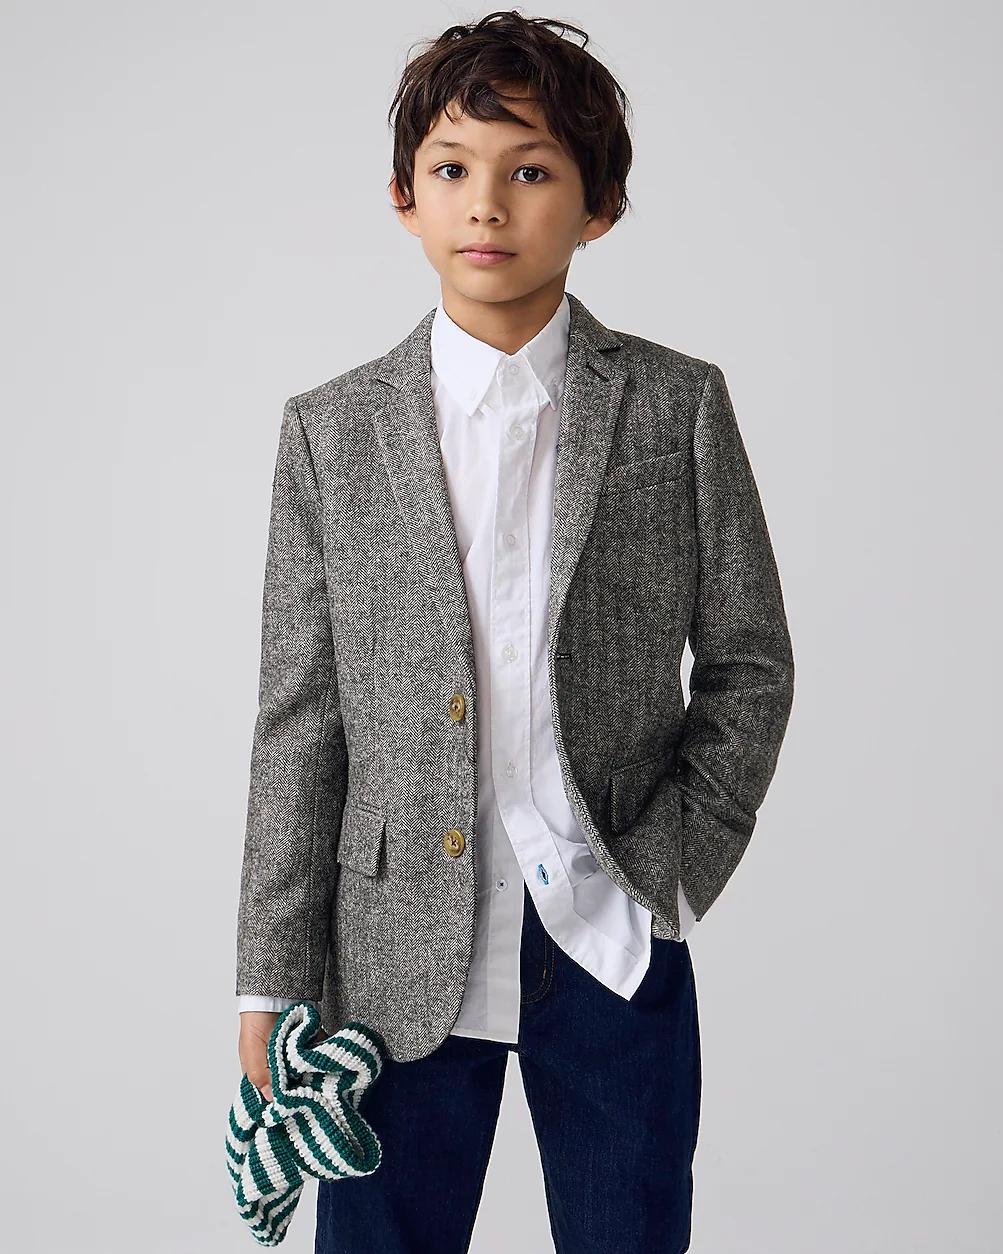 Boys' Ludlow suit jacket in wool-blend herringbone by J.CREW